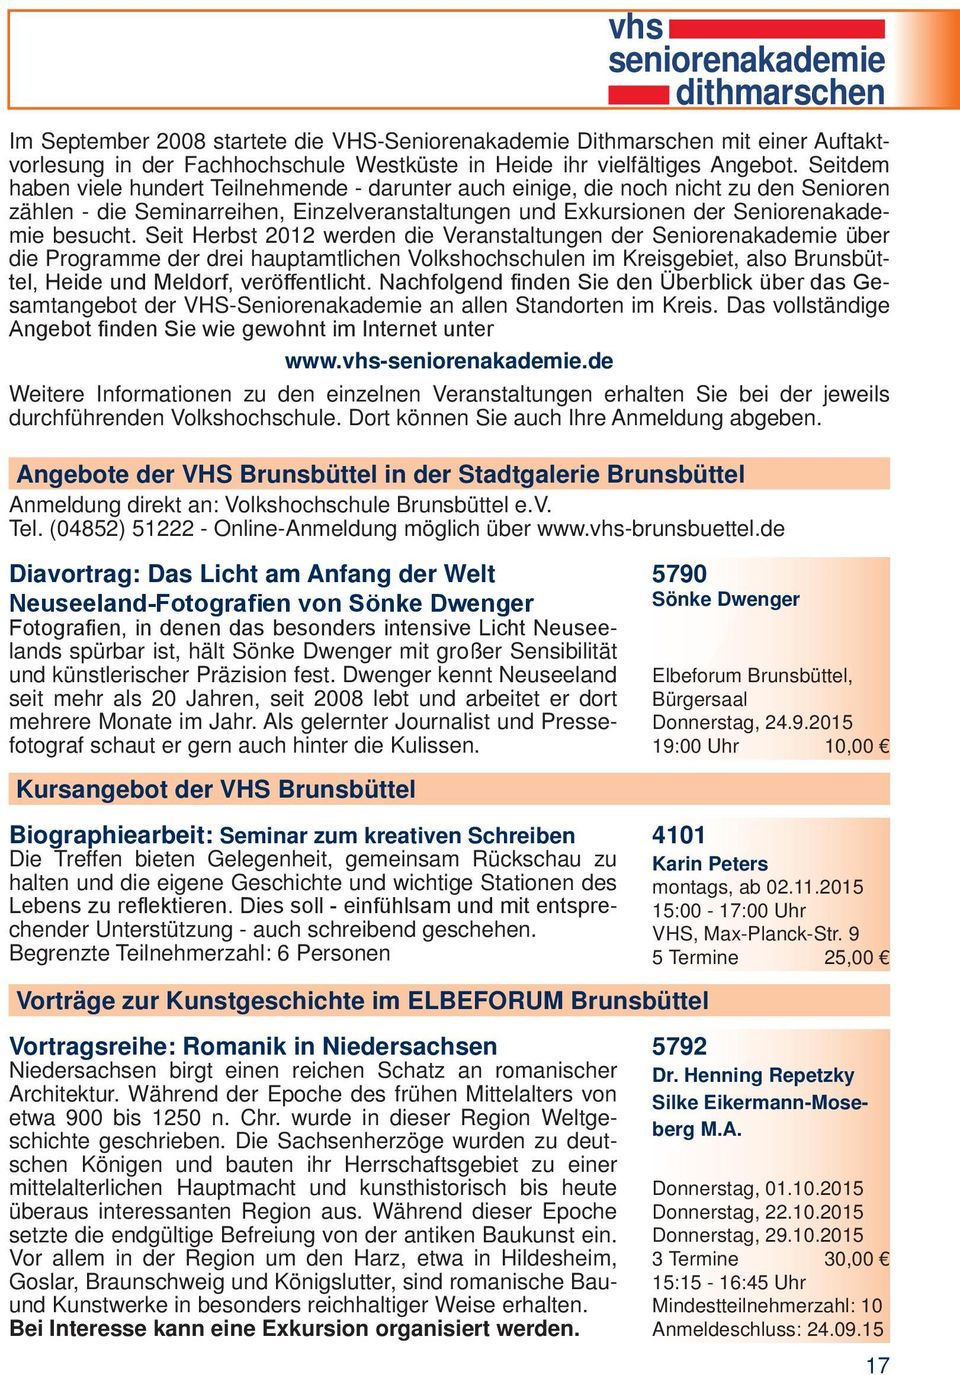 Seit Herbst 2012 werden die Veranstaltungen der Seniorenakademie über die Programme der drei hauptamtlichen Volkshochschulen im Kreisgebiet, also Brunsbüttel, Heide und Meldorf, veröffentlicht.